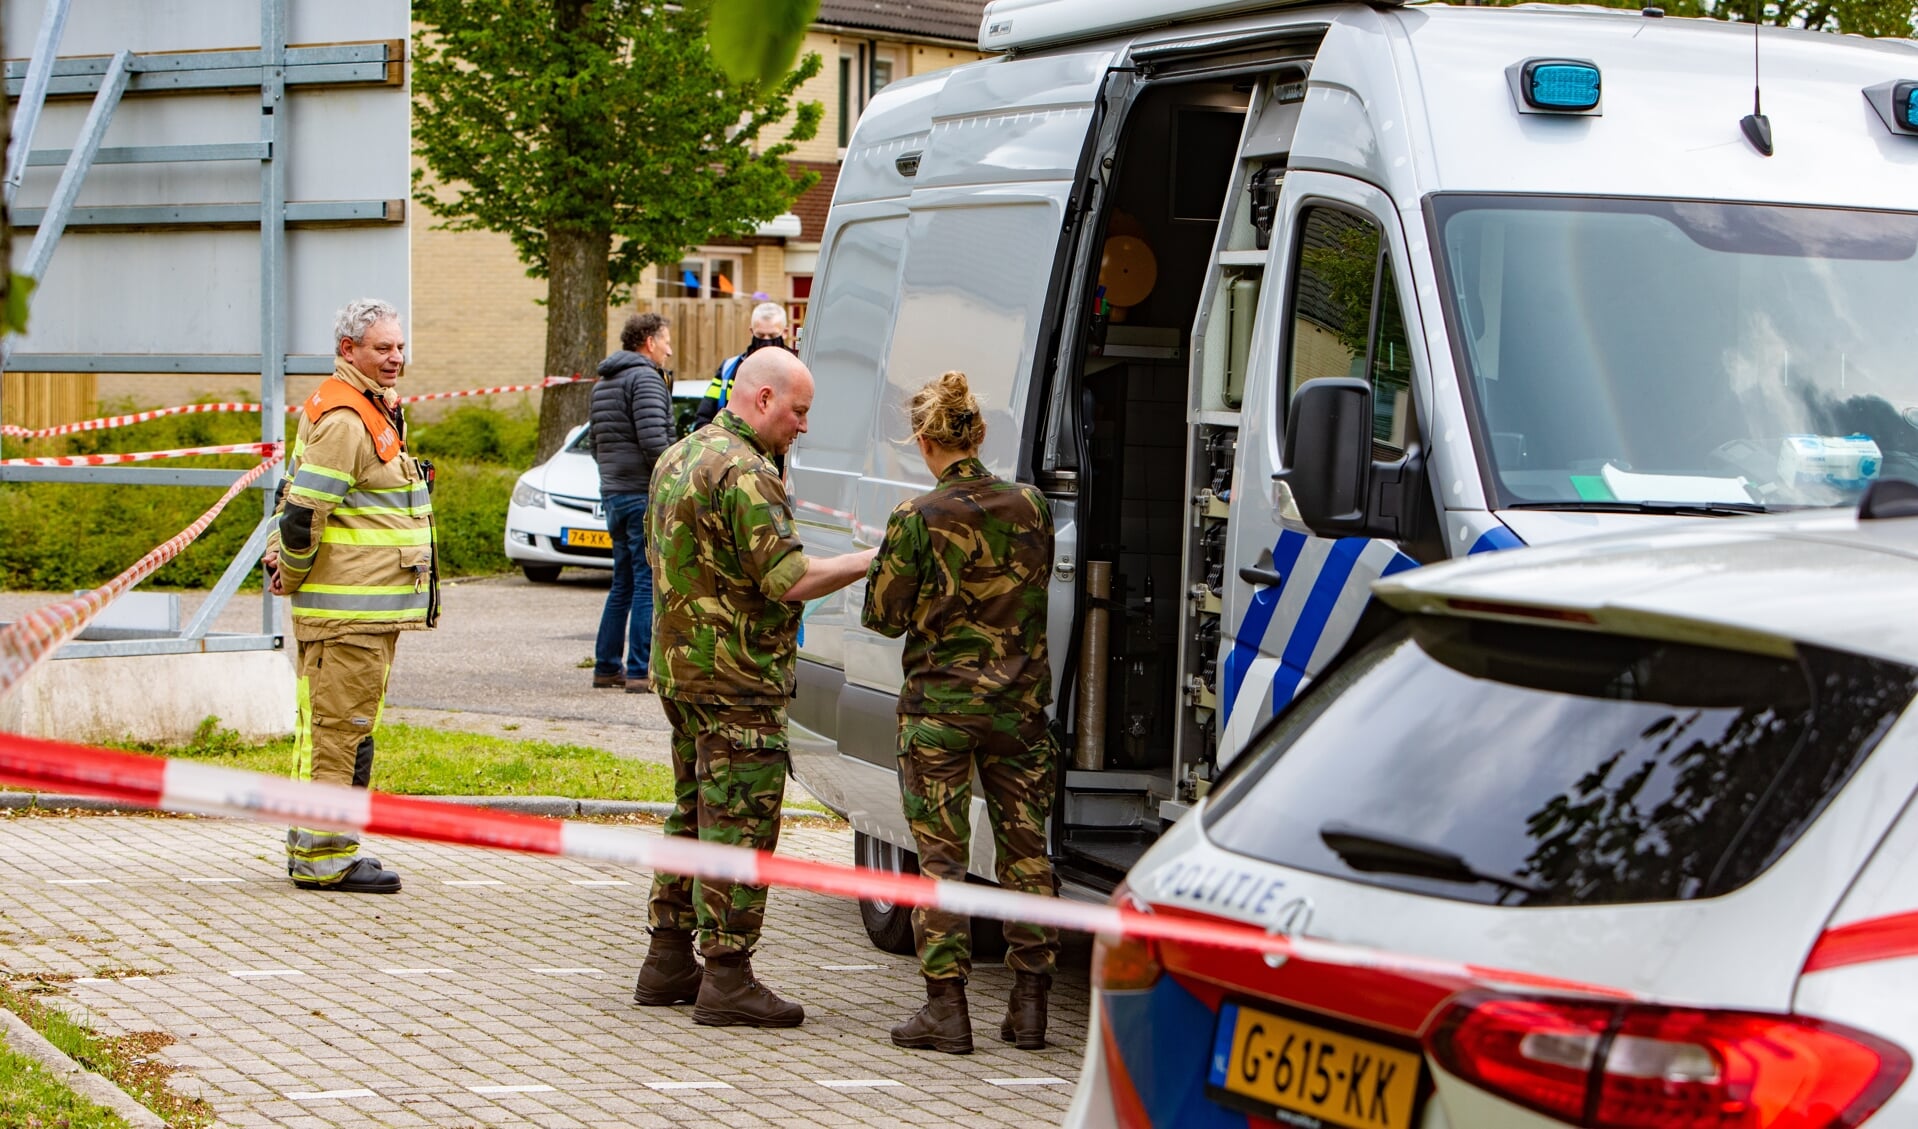 Op 23 mei zou de 22-jarige een explosief voor een woning aan de Distelmeent hebben gelegd. 